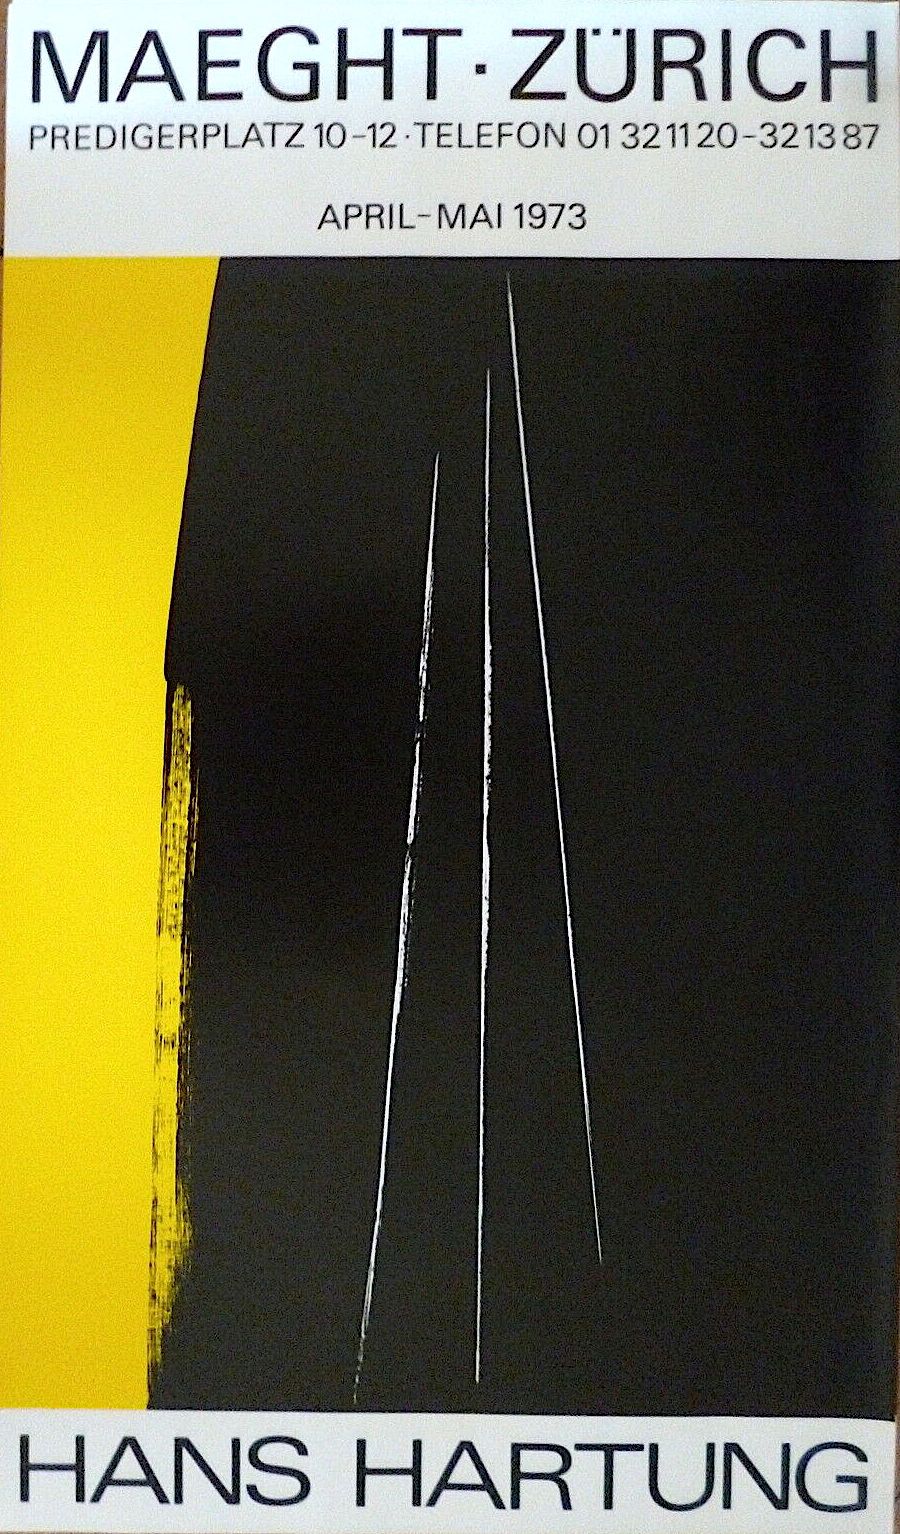 Null 汉通公司

海报平版印刷1973

为在苏黎世举办的展览而印制

格式70 x 41厘米